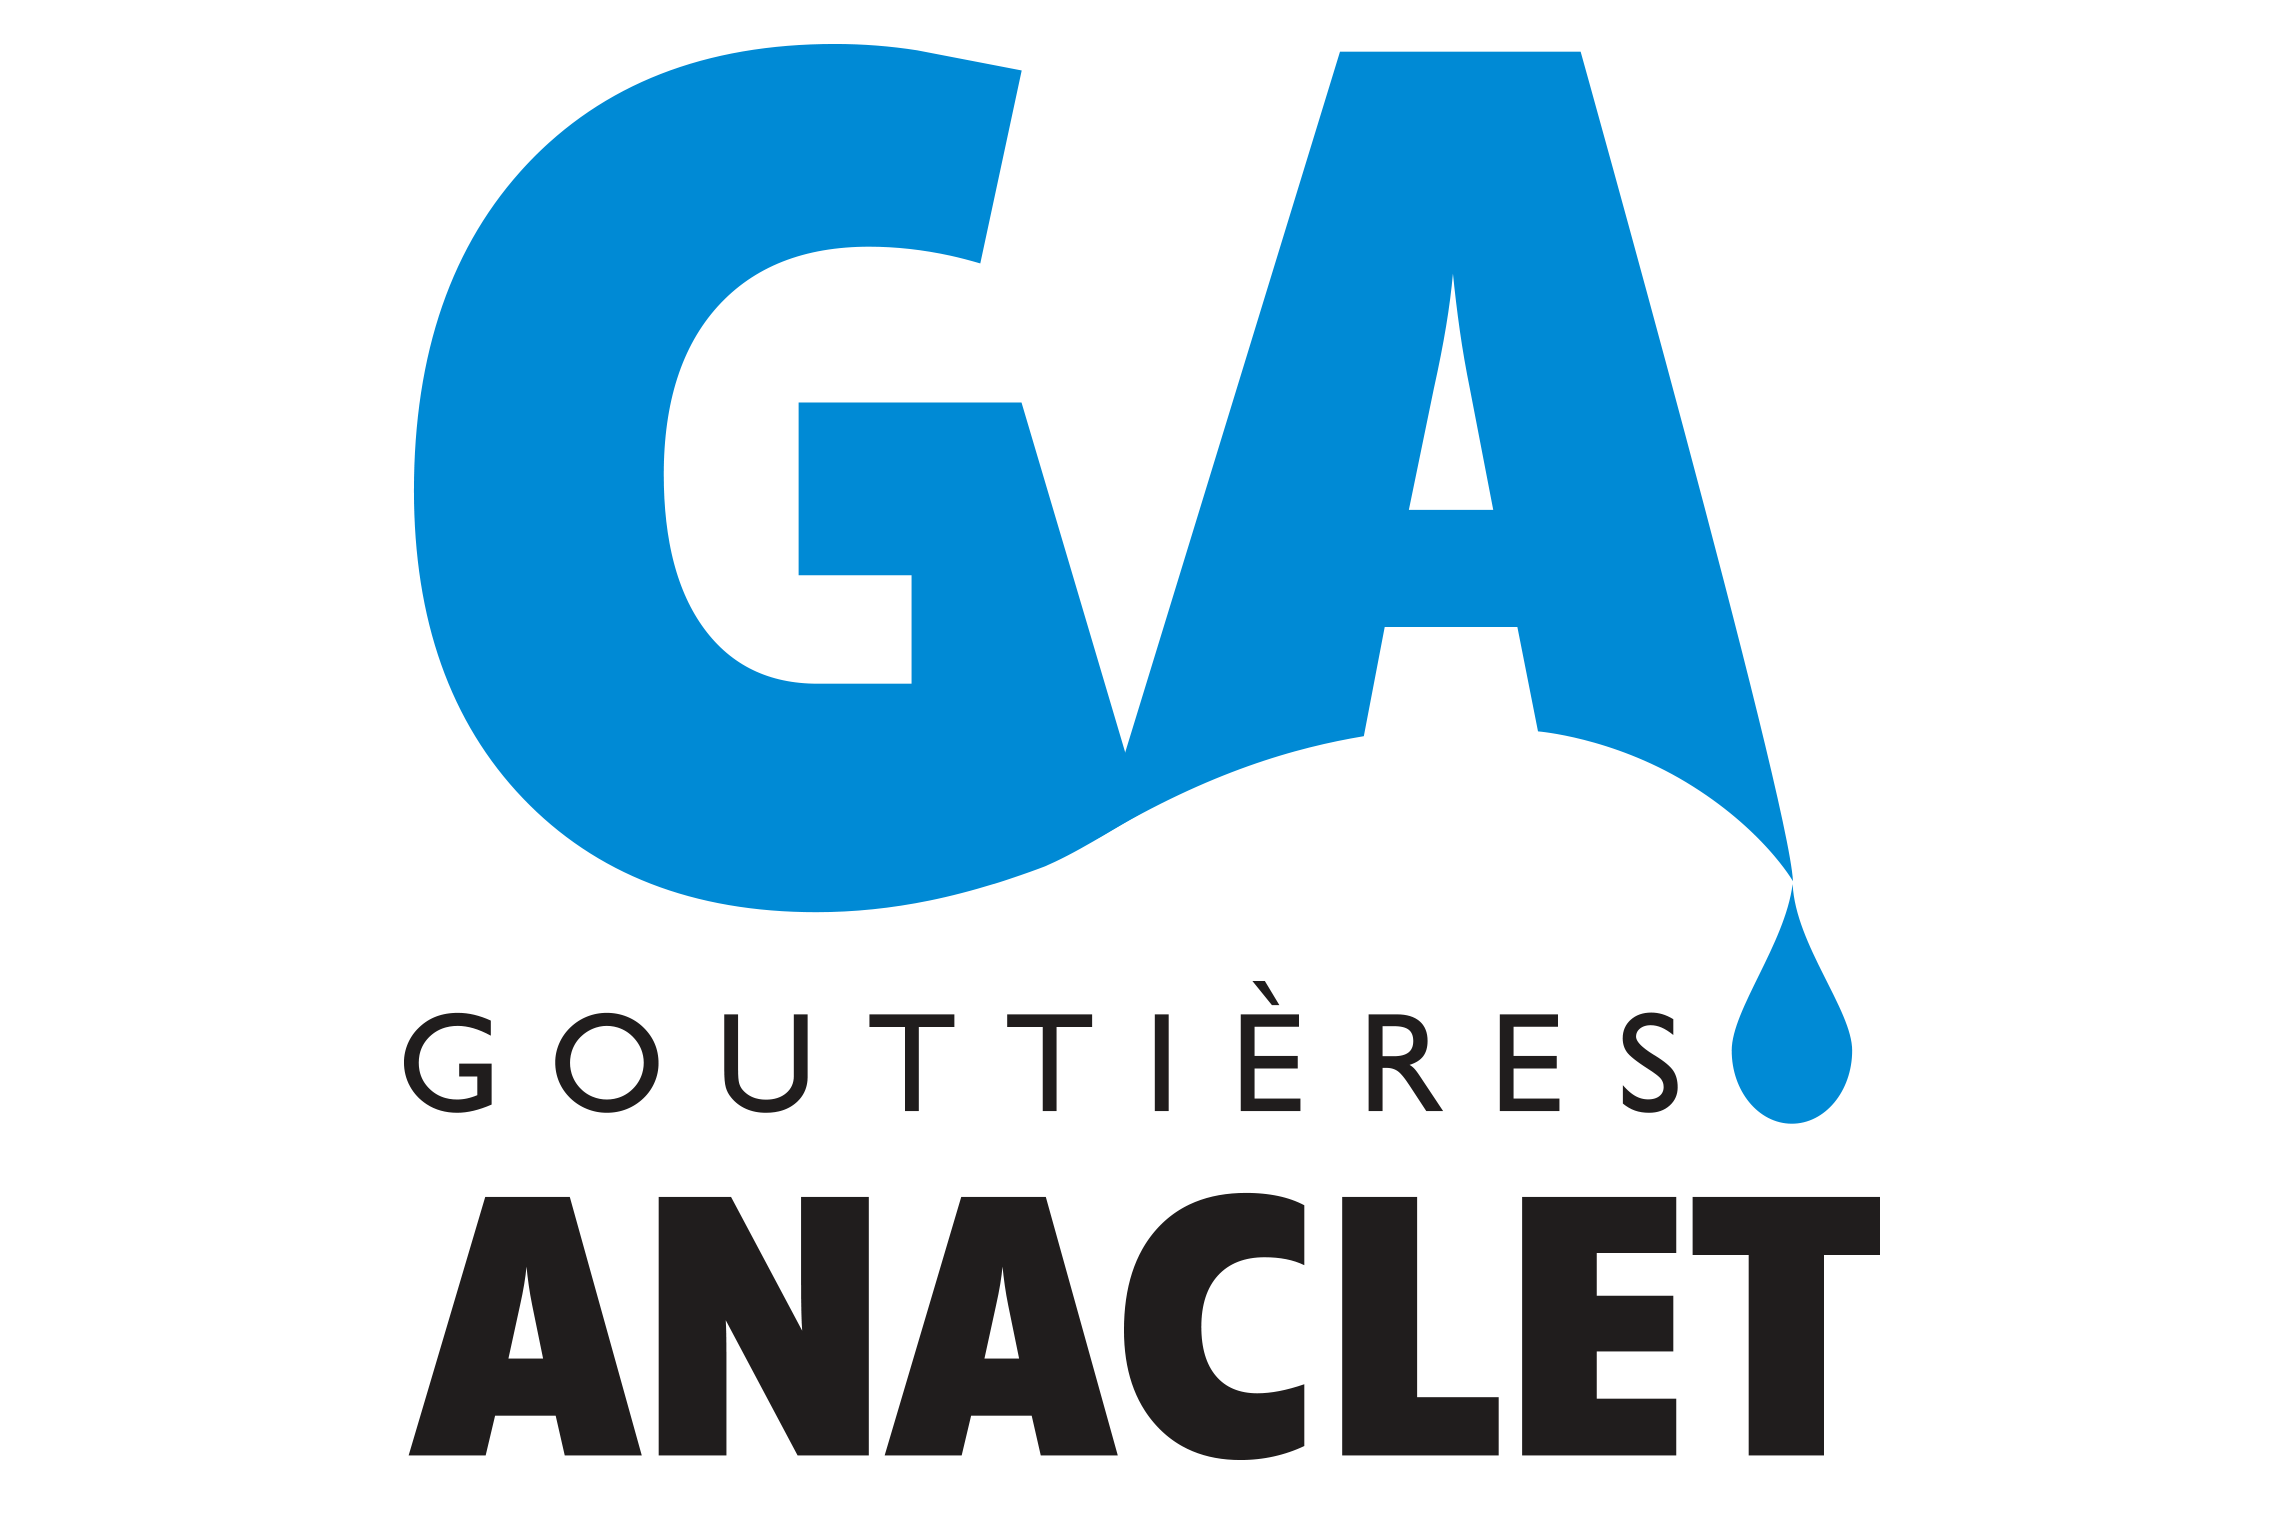 Gouttières Anaclet